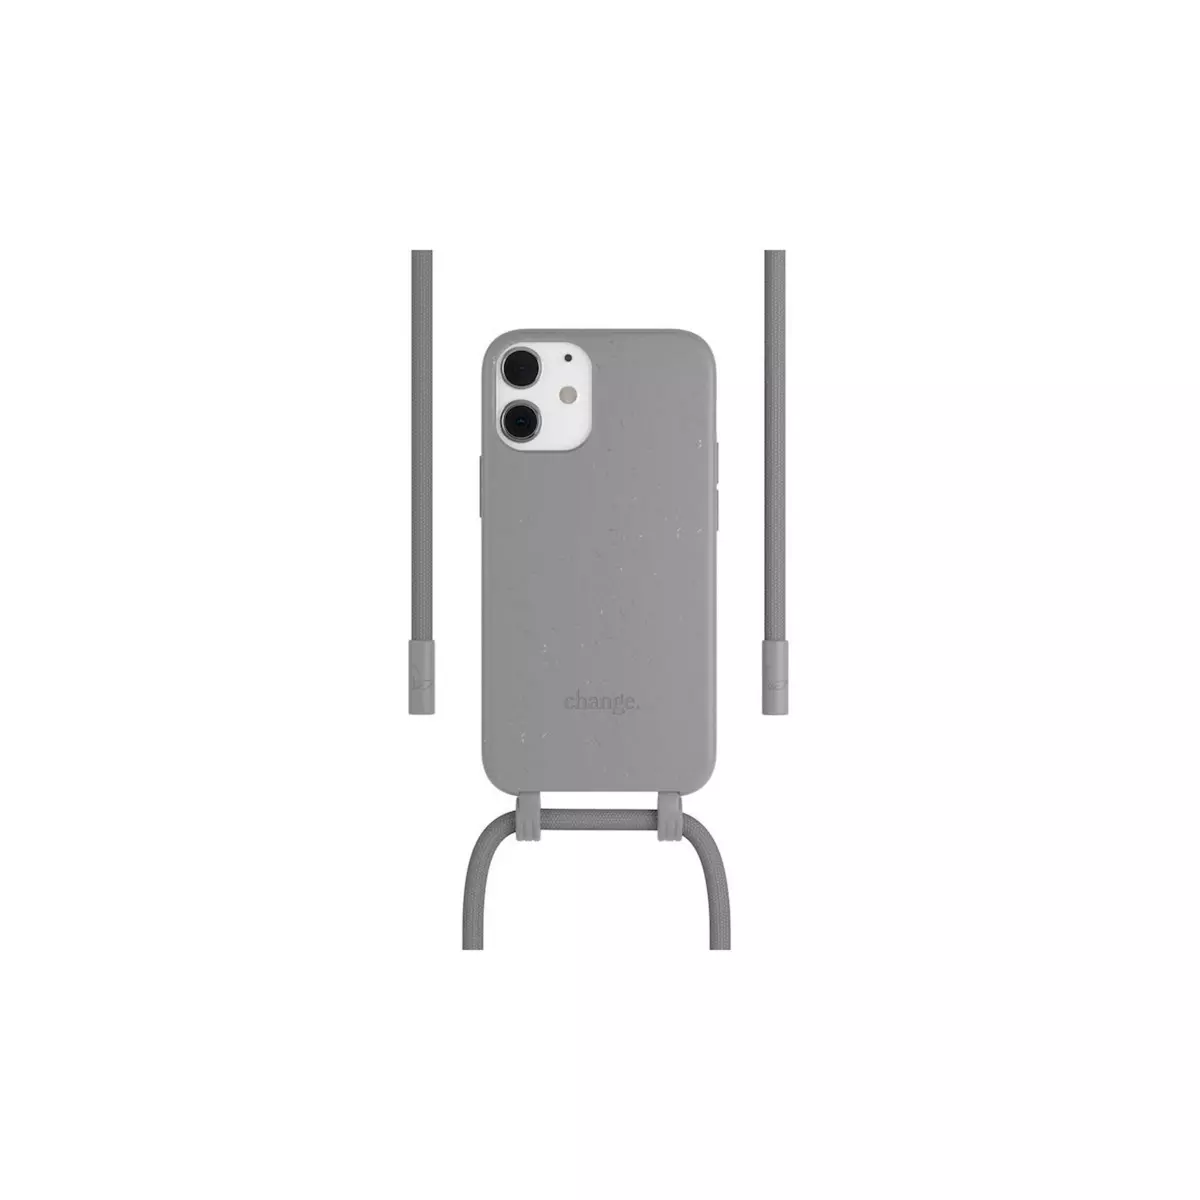 WOODCESSORIES Coque collier iPhone 12 mini Tour de cou Bio gris